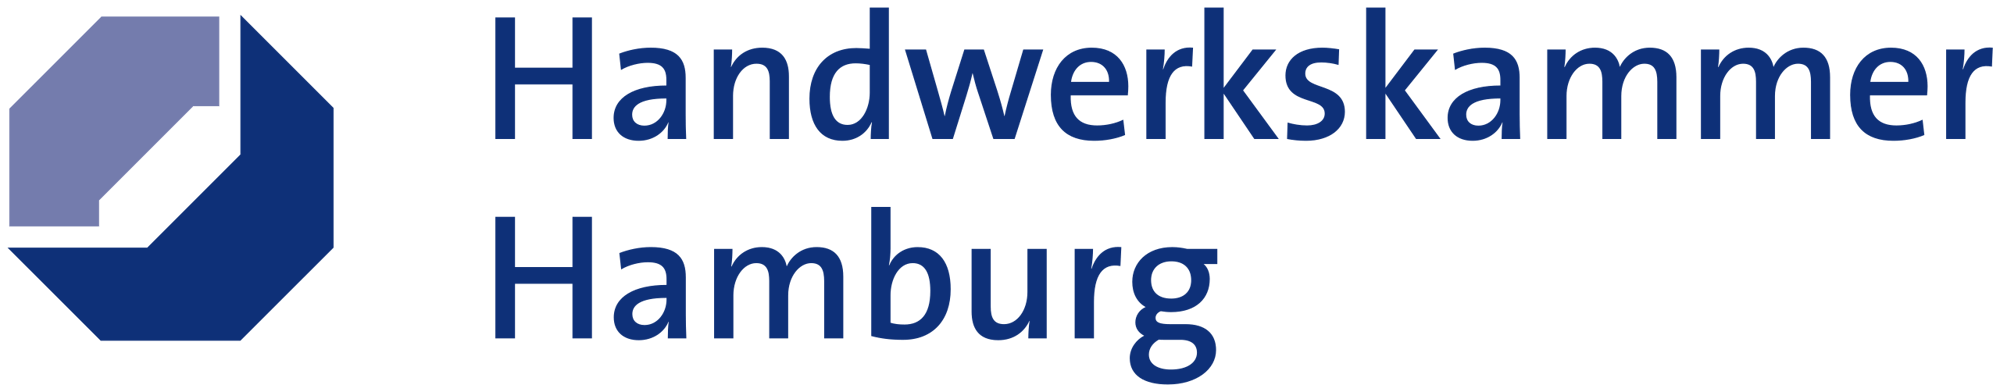 2560px-Handwerkskammer-Hamburg-Logo_2013.svg